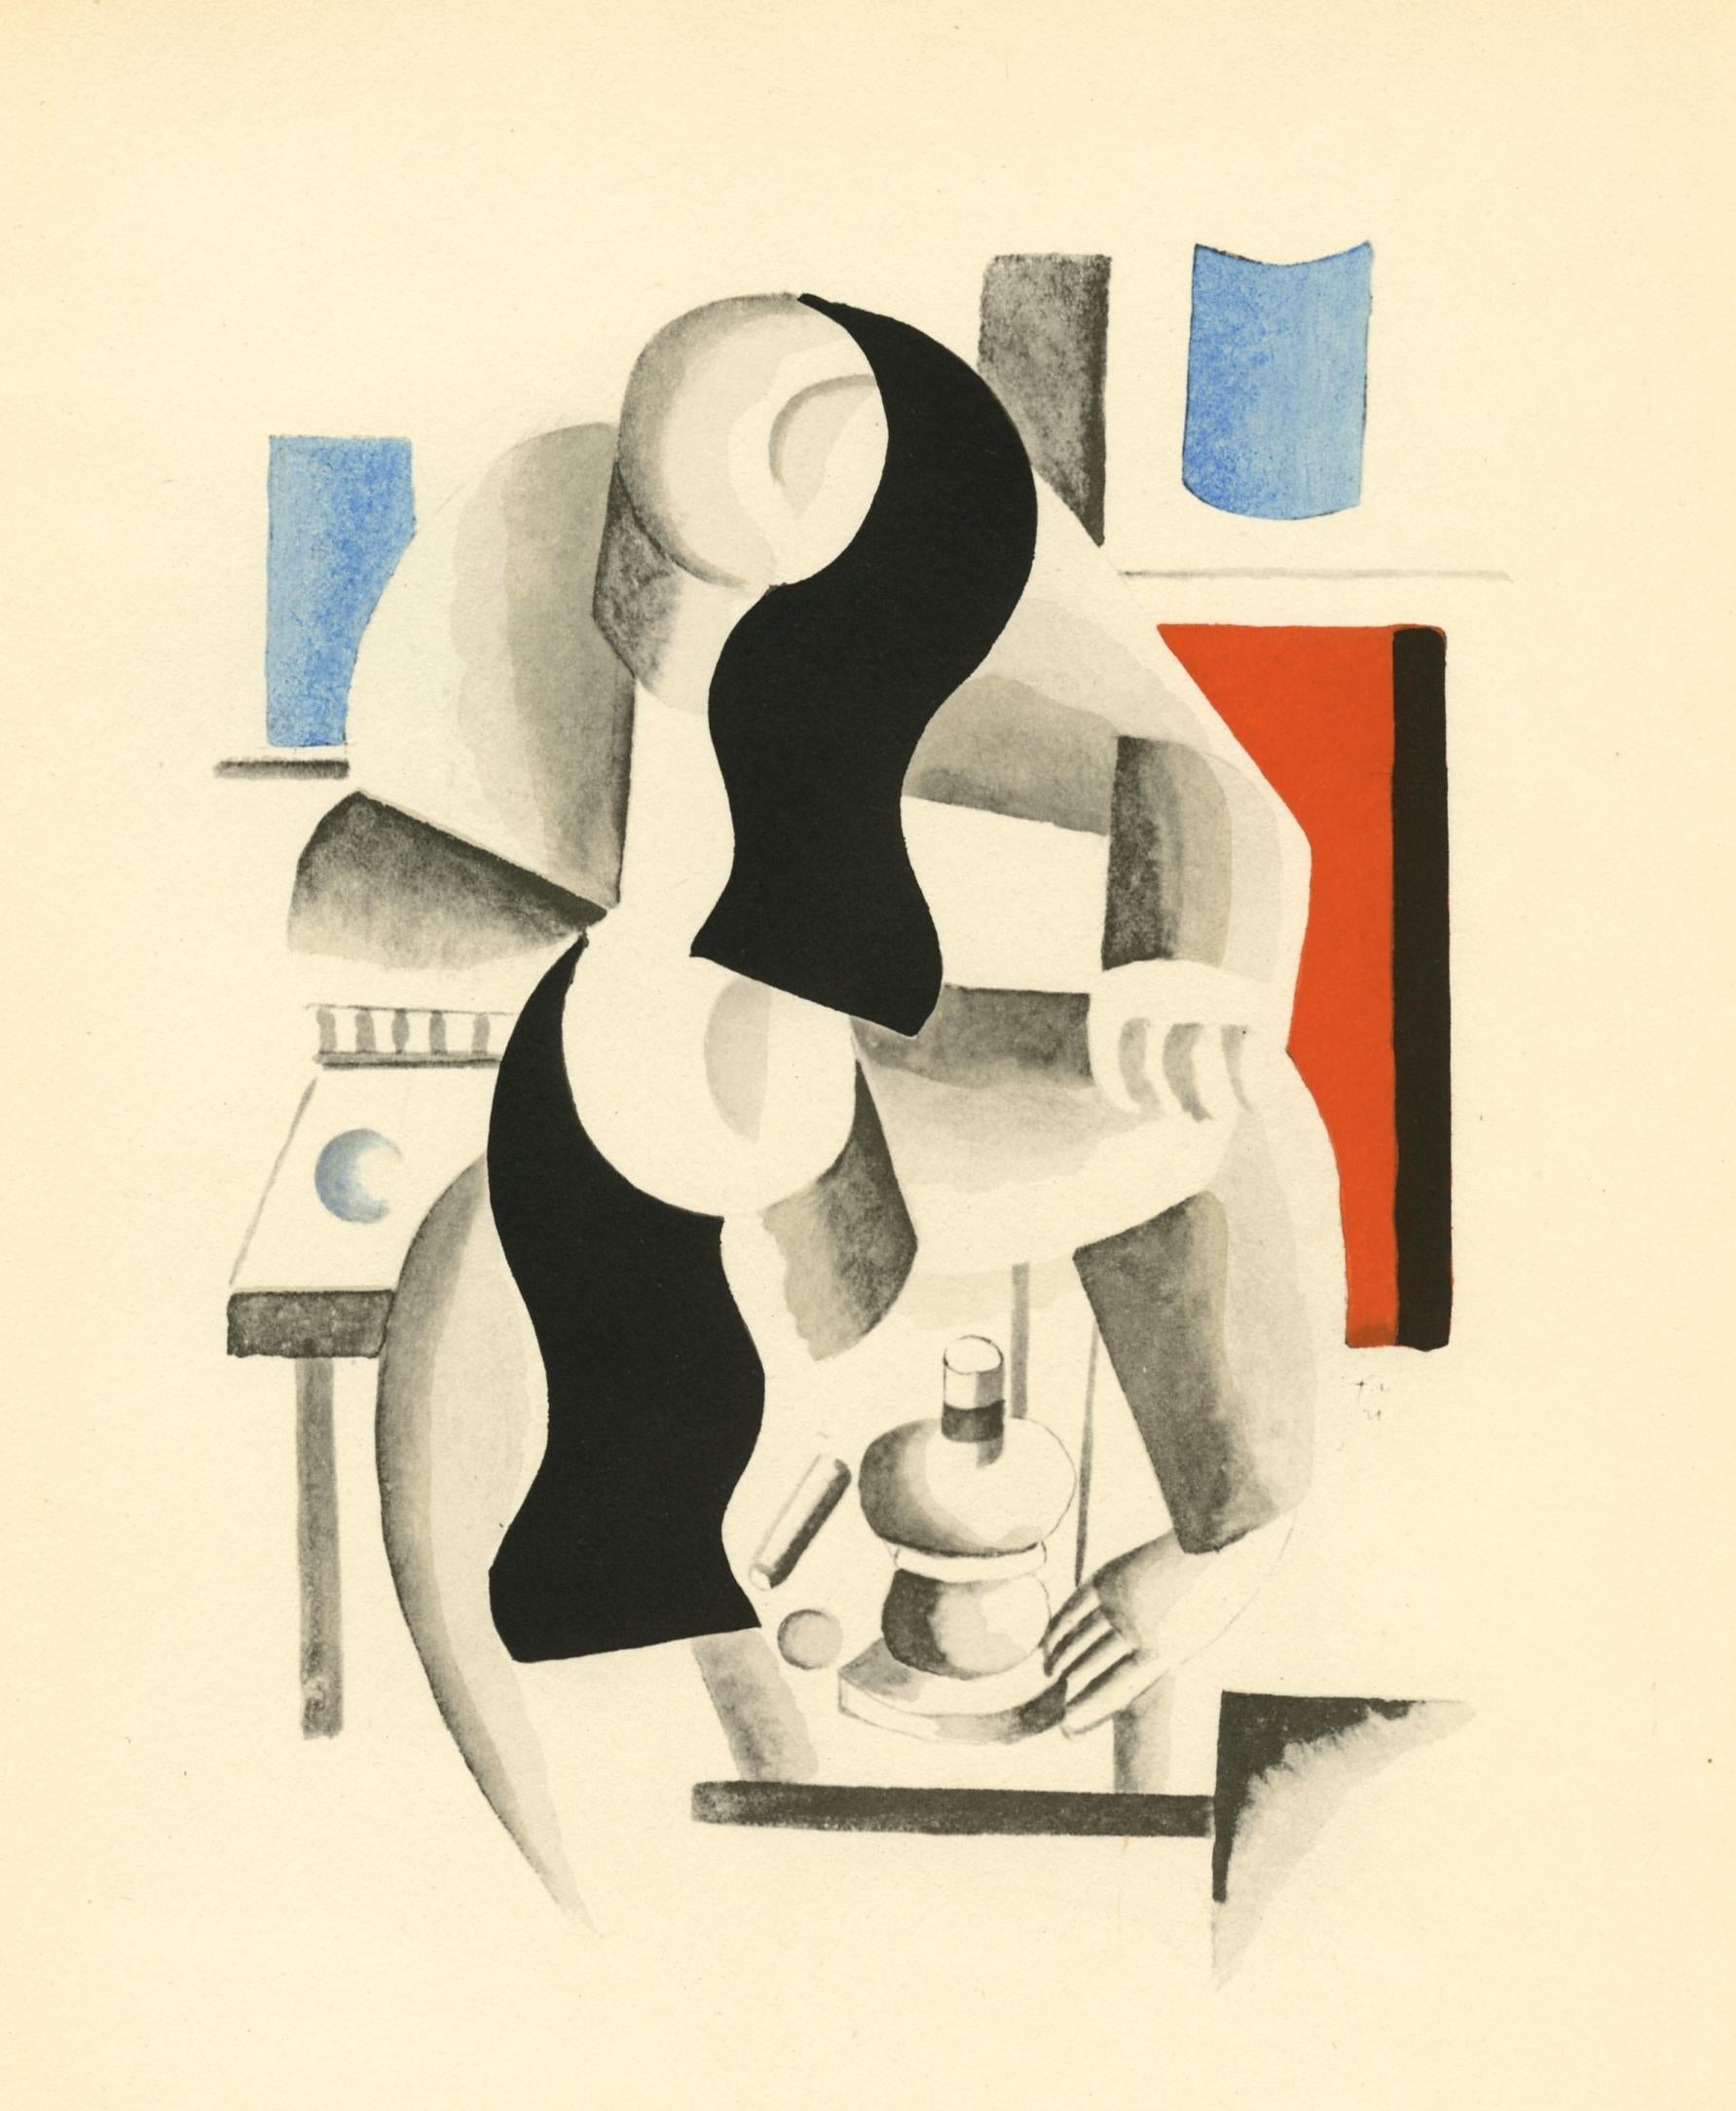 pochoir - Print by (after) Fernand Léger